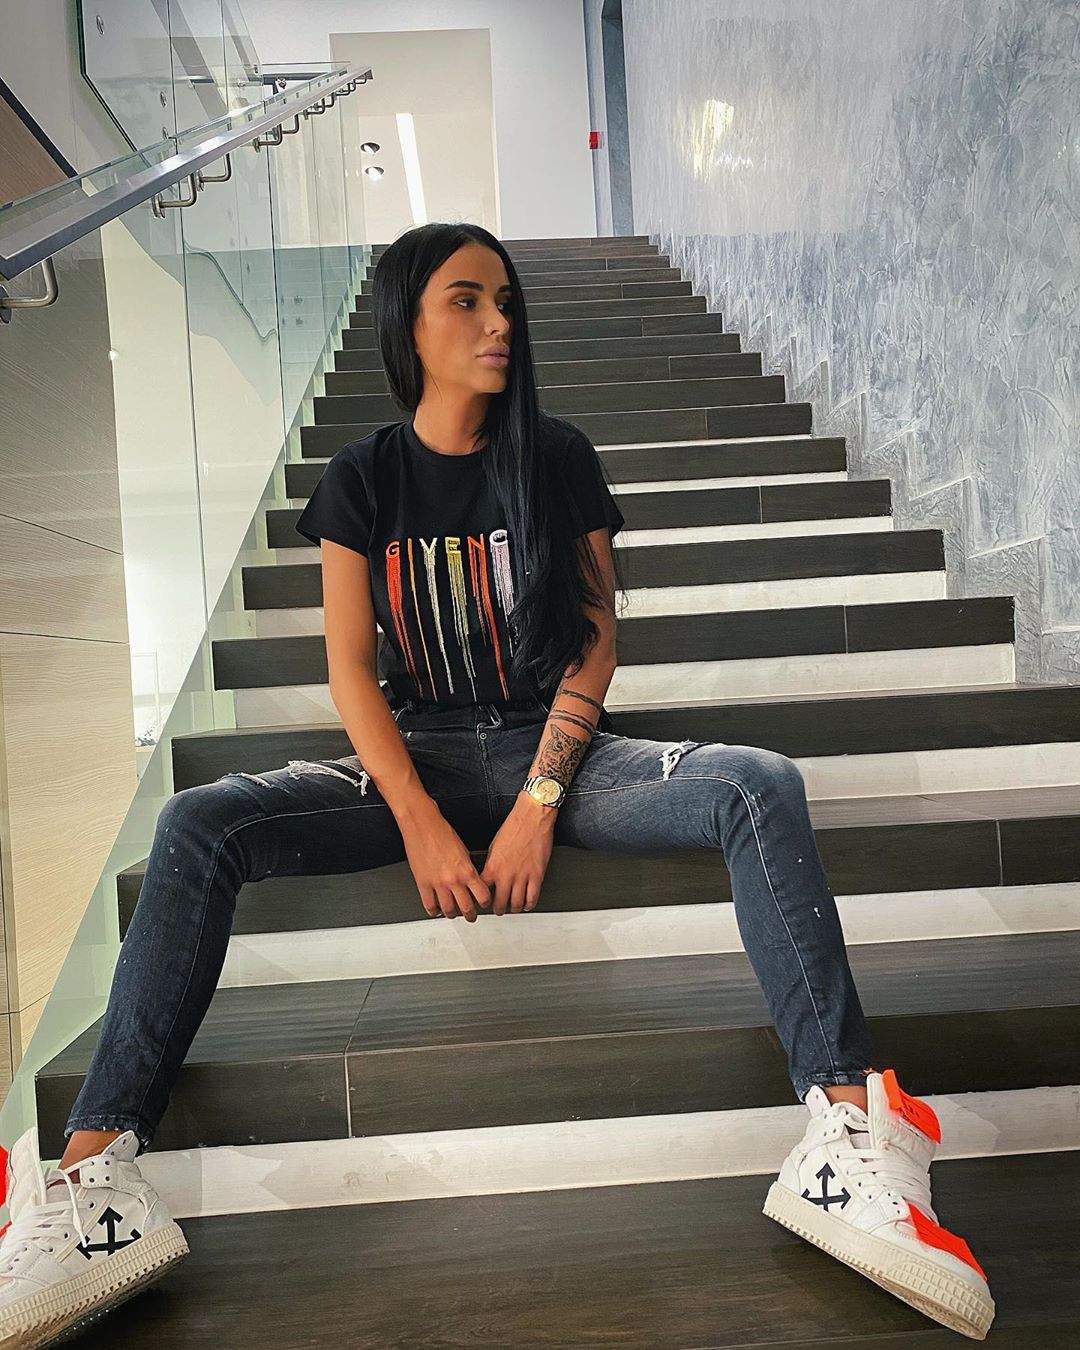 Daniela Crudu s-a fotografiat pe scări, îmbrăcată în blugi și tricou negru